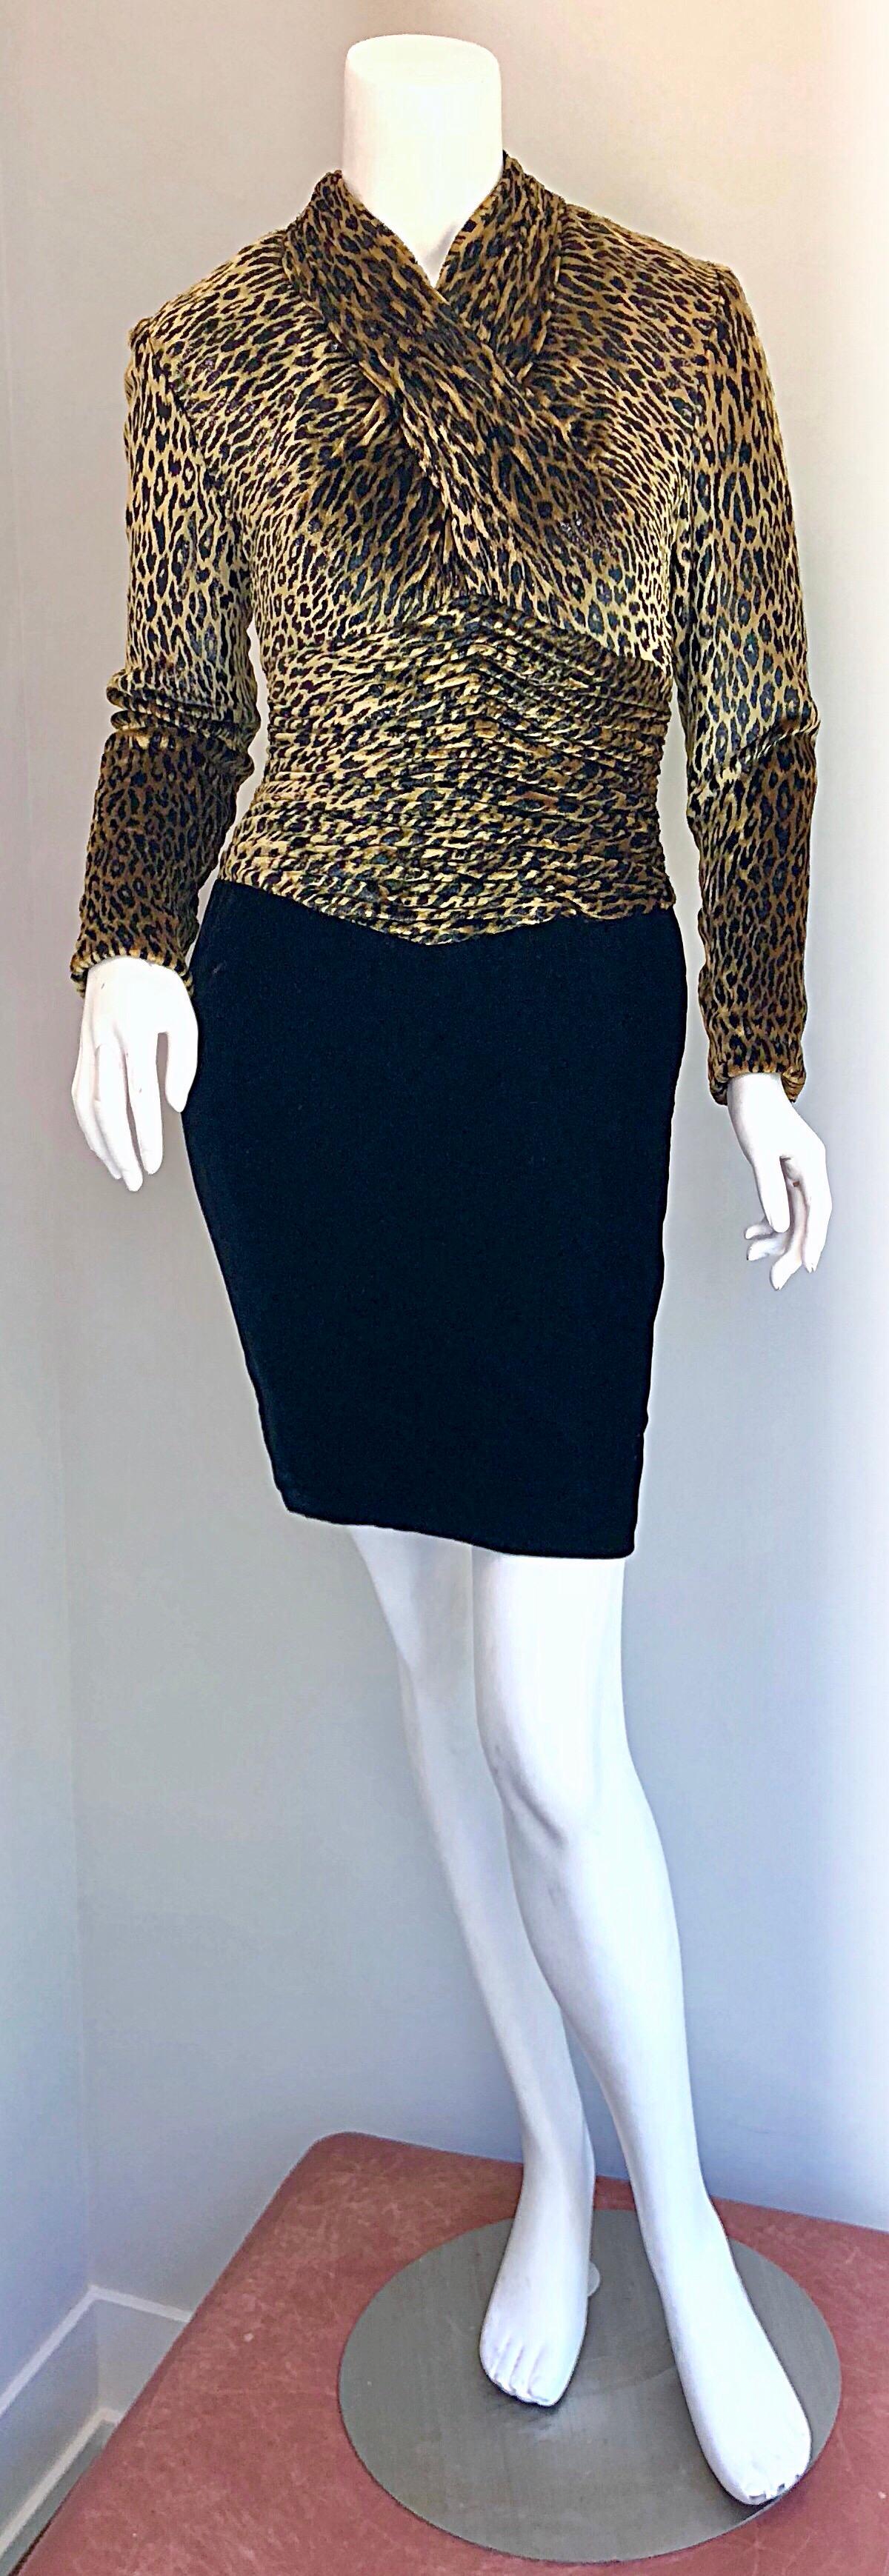 velvet cheetah dress